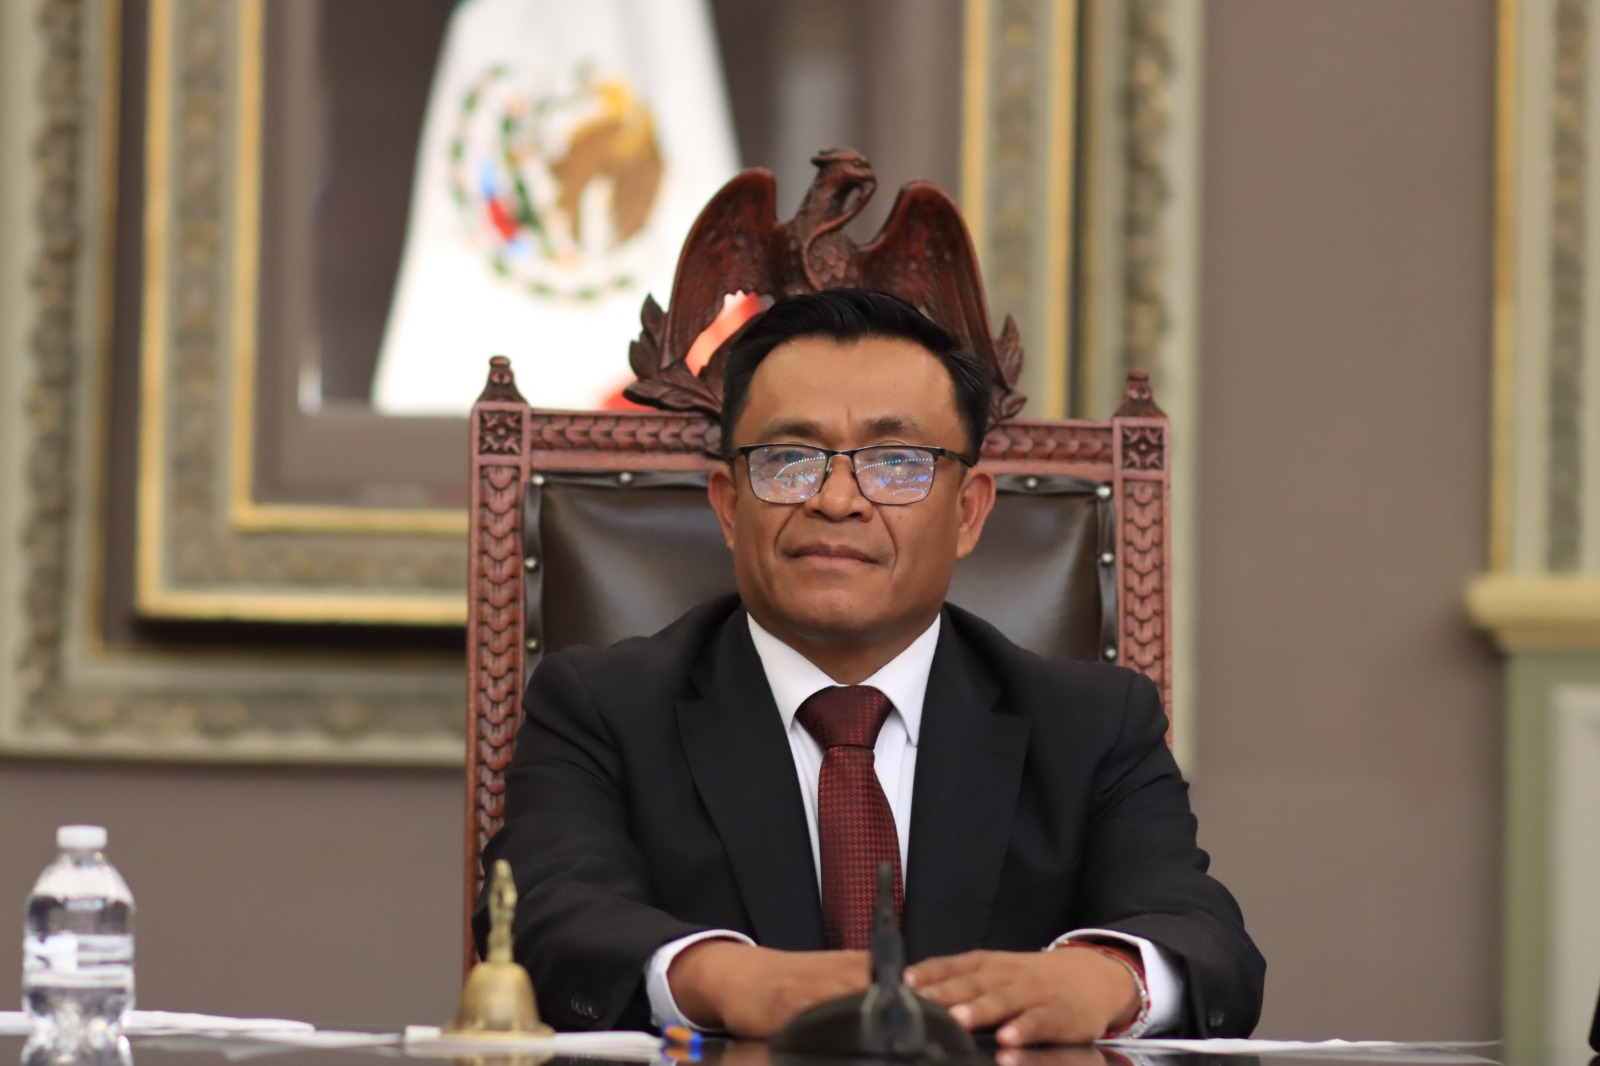 El diputado Edgar Garmendia de los Santos fue elegido como presidente de la Junta de Gobierno y Coordinación Política (JUGOCOPO) en la LXI Legislatura del Congreso del Estado de Puebla